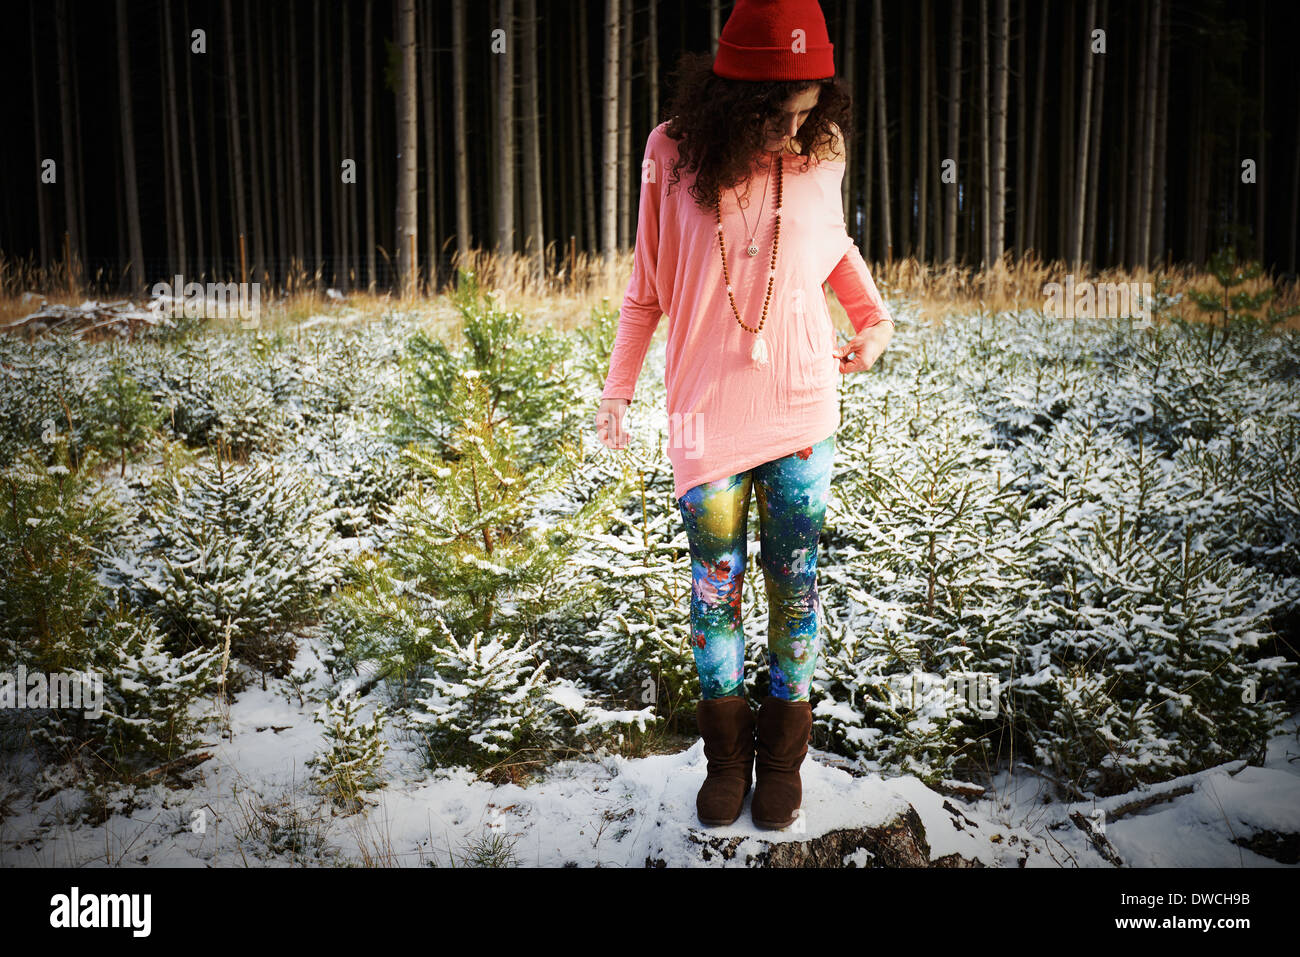 Mitad mujer adulta en hat, de pie en el suelo cubierto de nieve Foto de stock